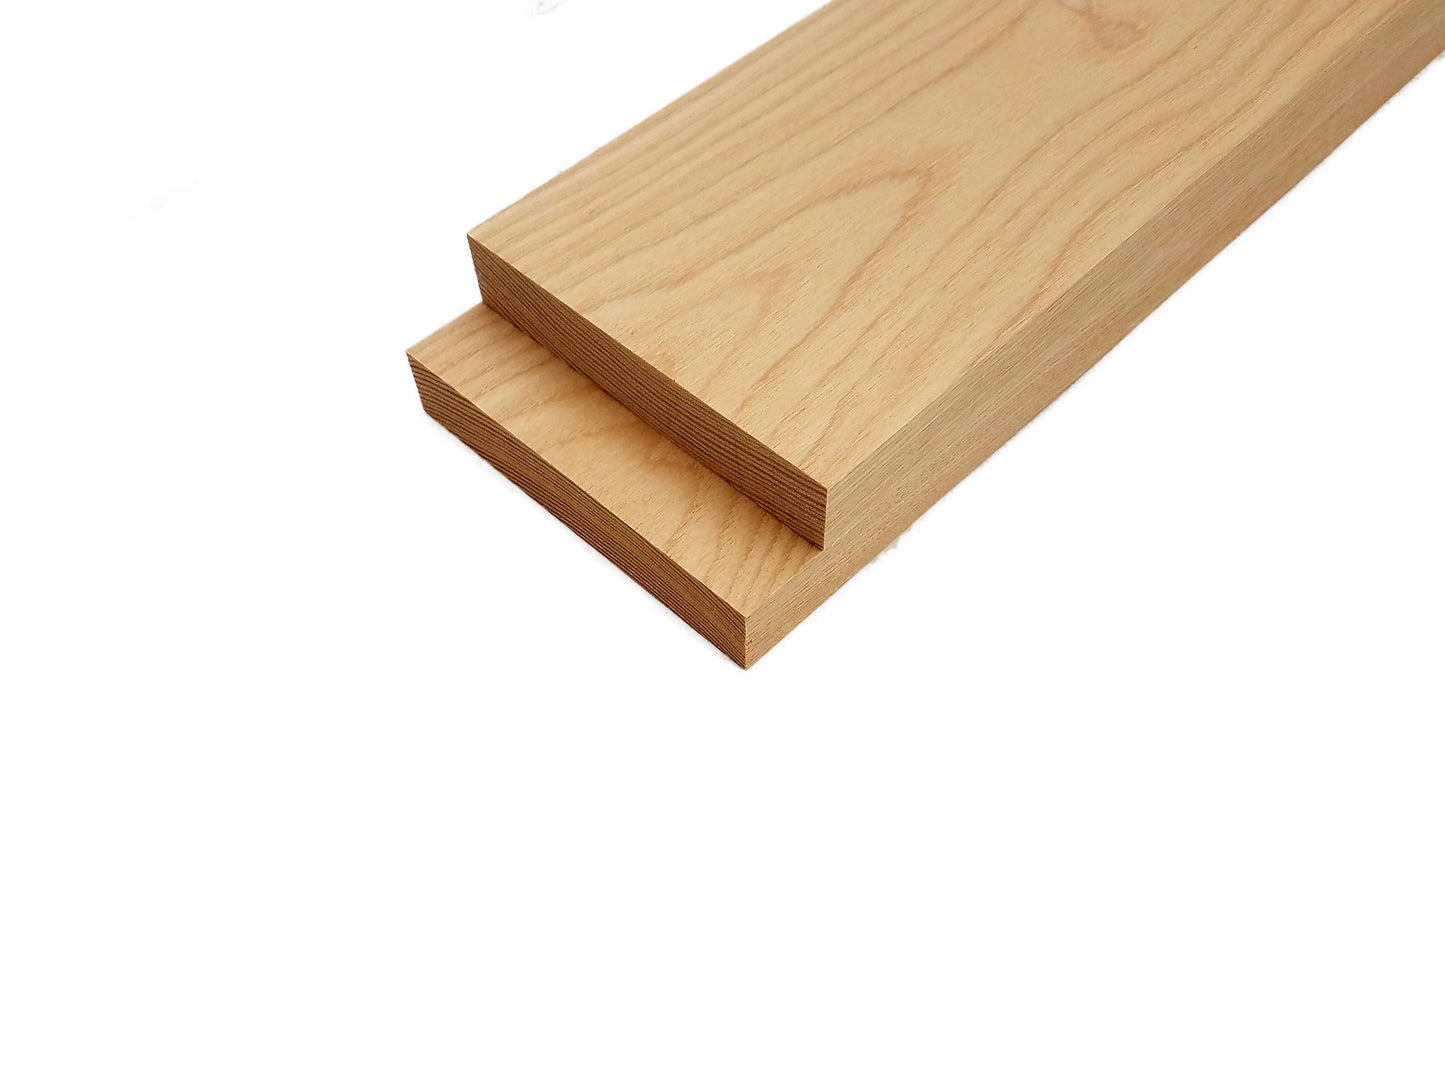 White Ash Lumber Board - 3/4" x 4" (2 Pcs)